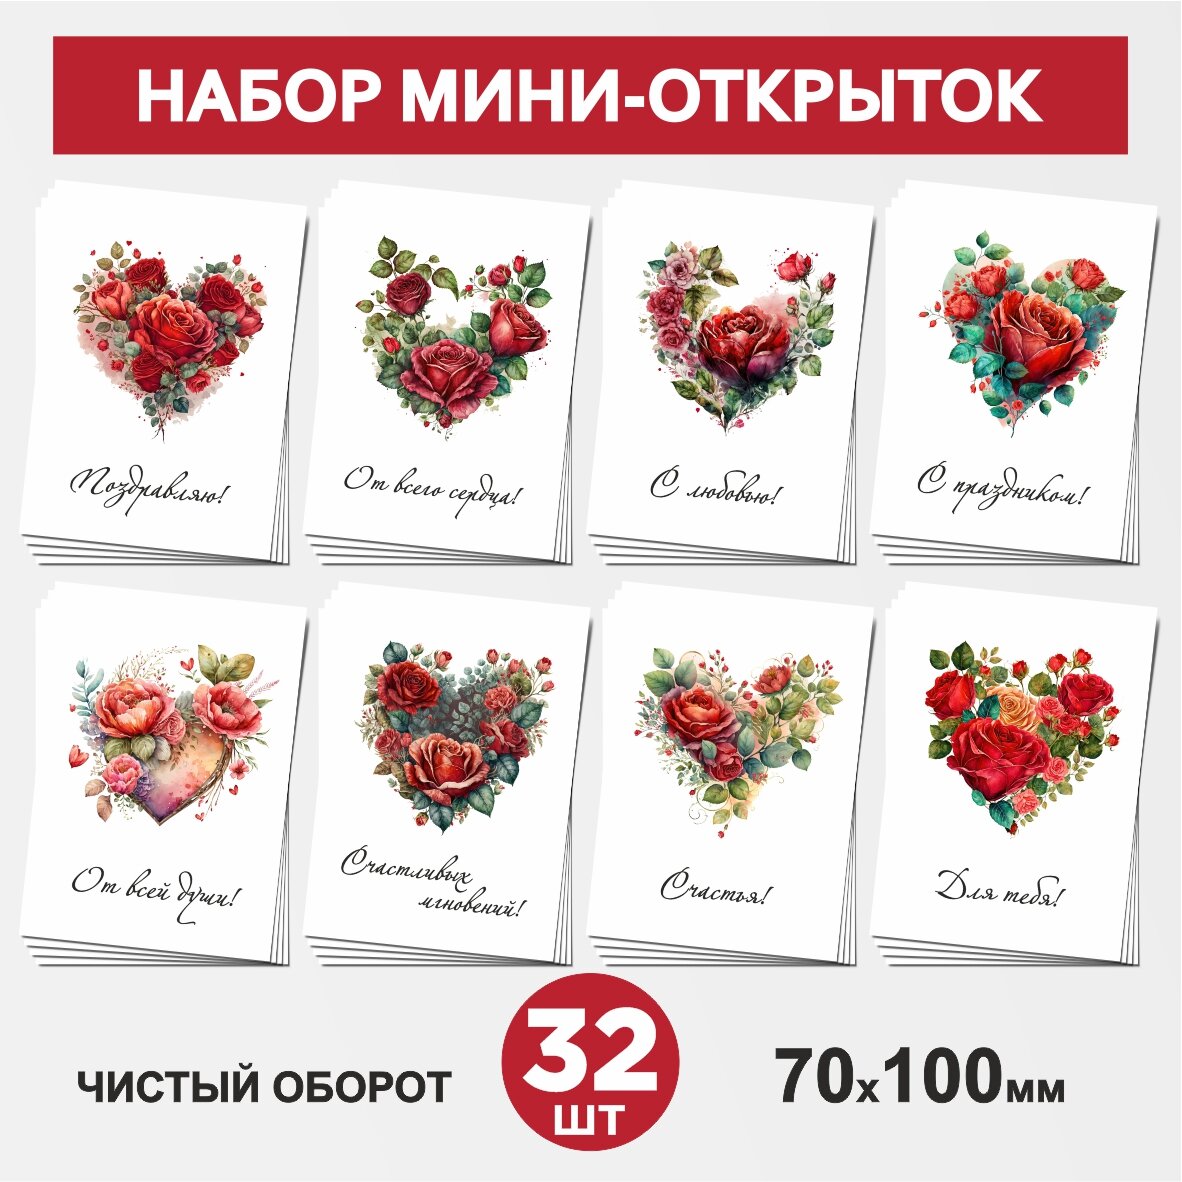 Набор мини-открыток 32 шт, 70х100мм, бирки, карточки для подарков на 14 февраля, 8 Марта, День Рождения - Сердце, цветы №1, postcard_32_heart_set_1